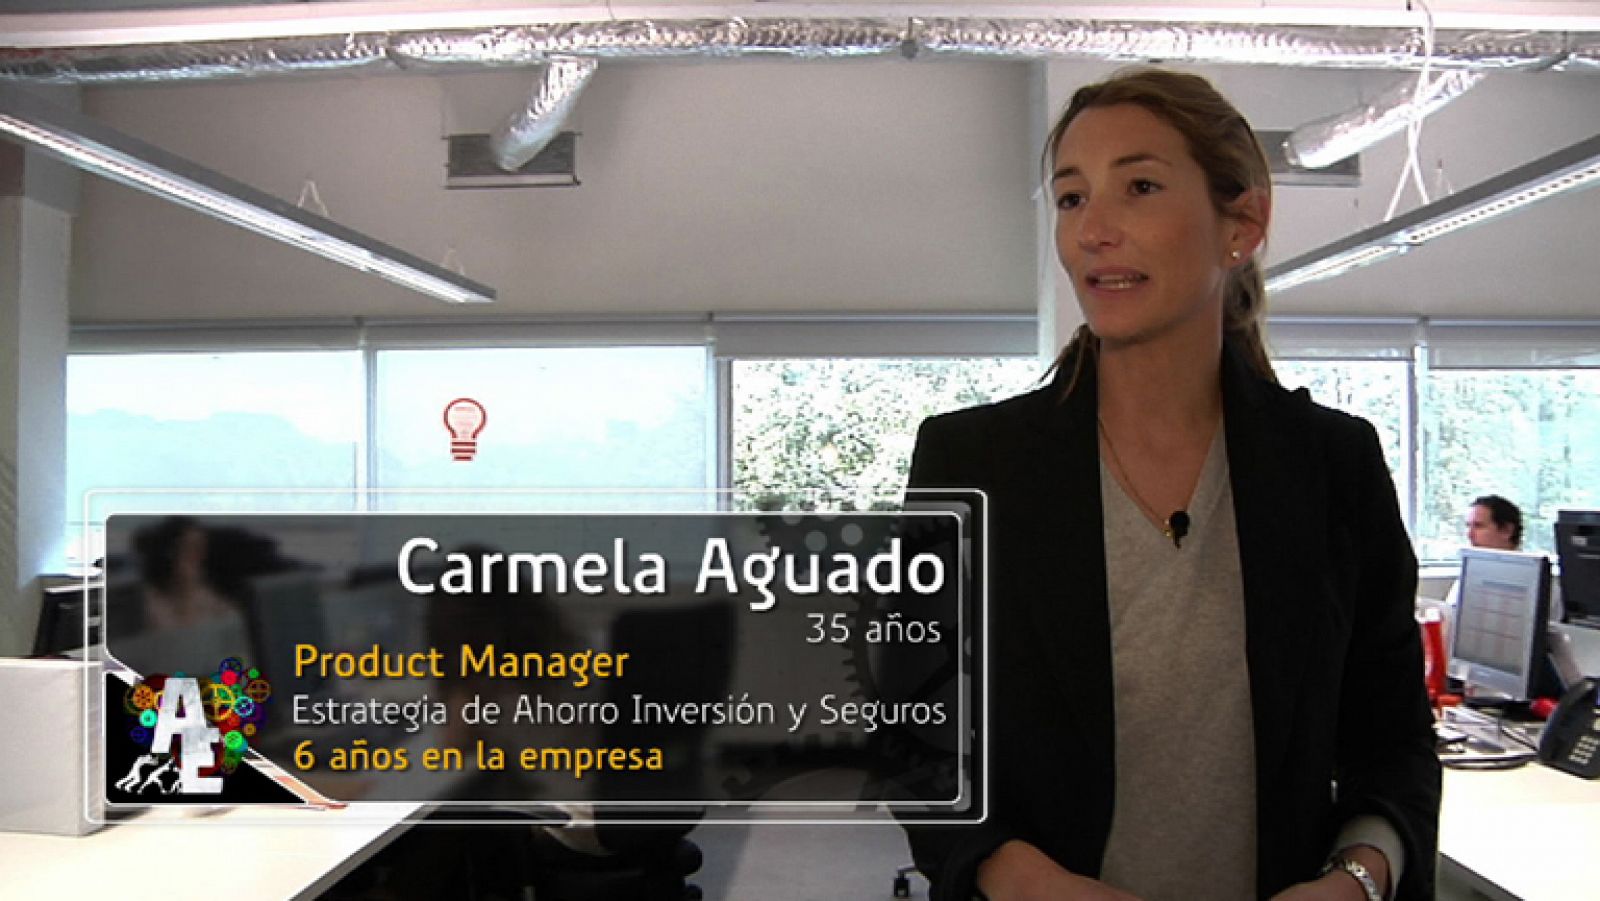 Carmela Aguado (35 años), Product Manager